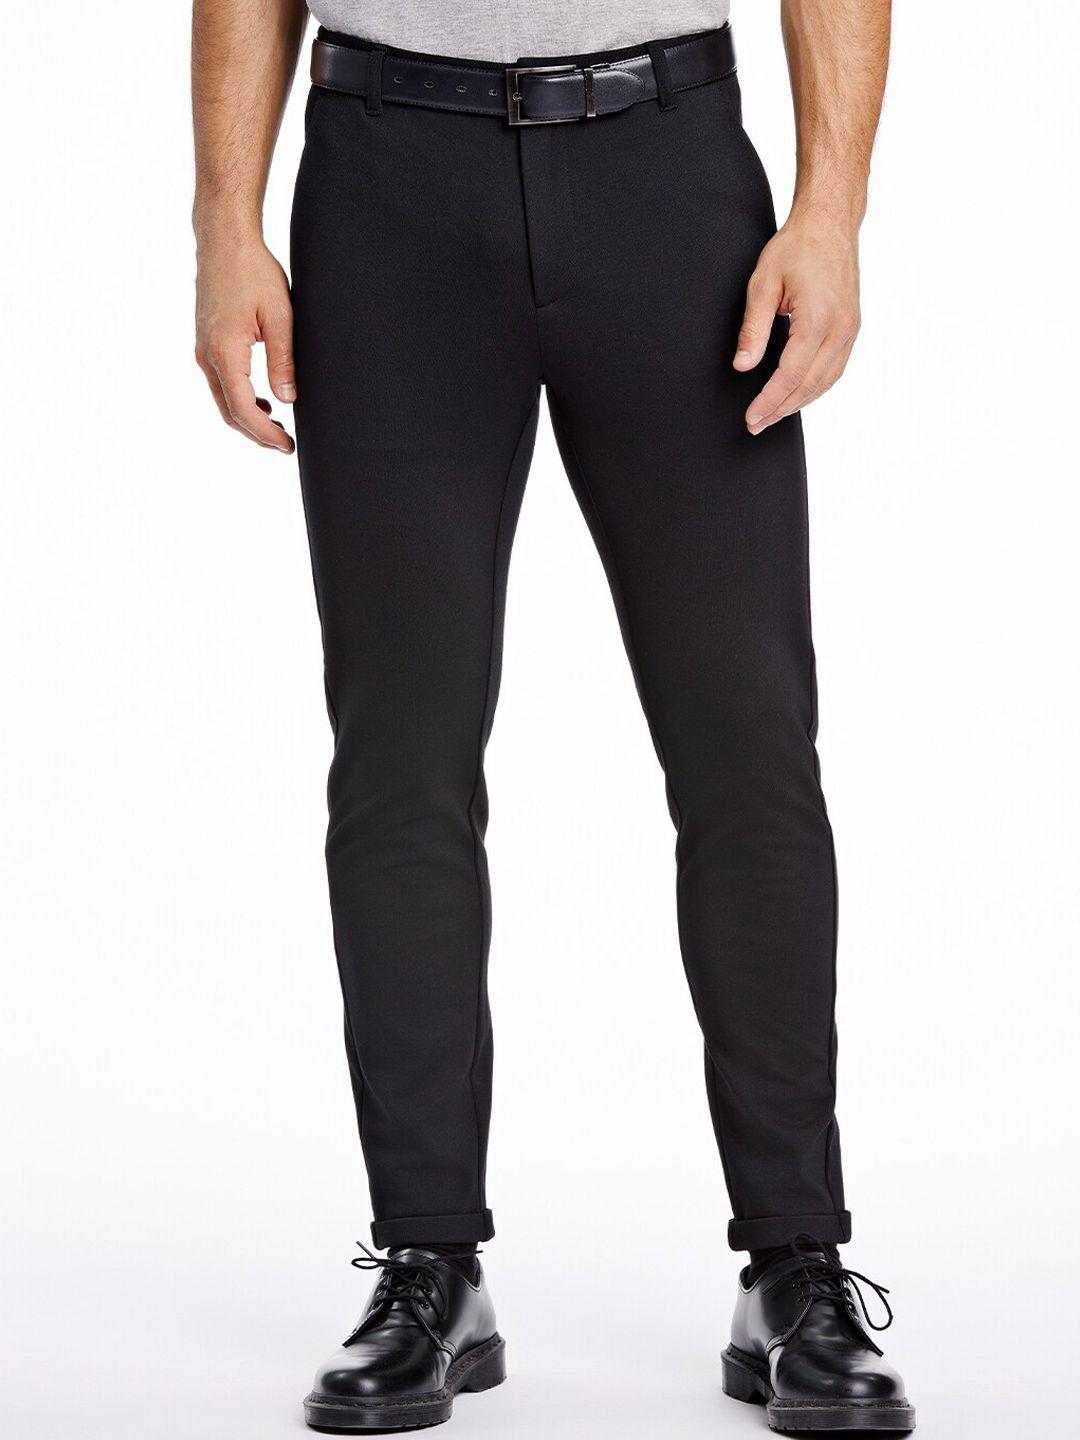 lindbergh-men-black-slim-fit-trousers